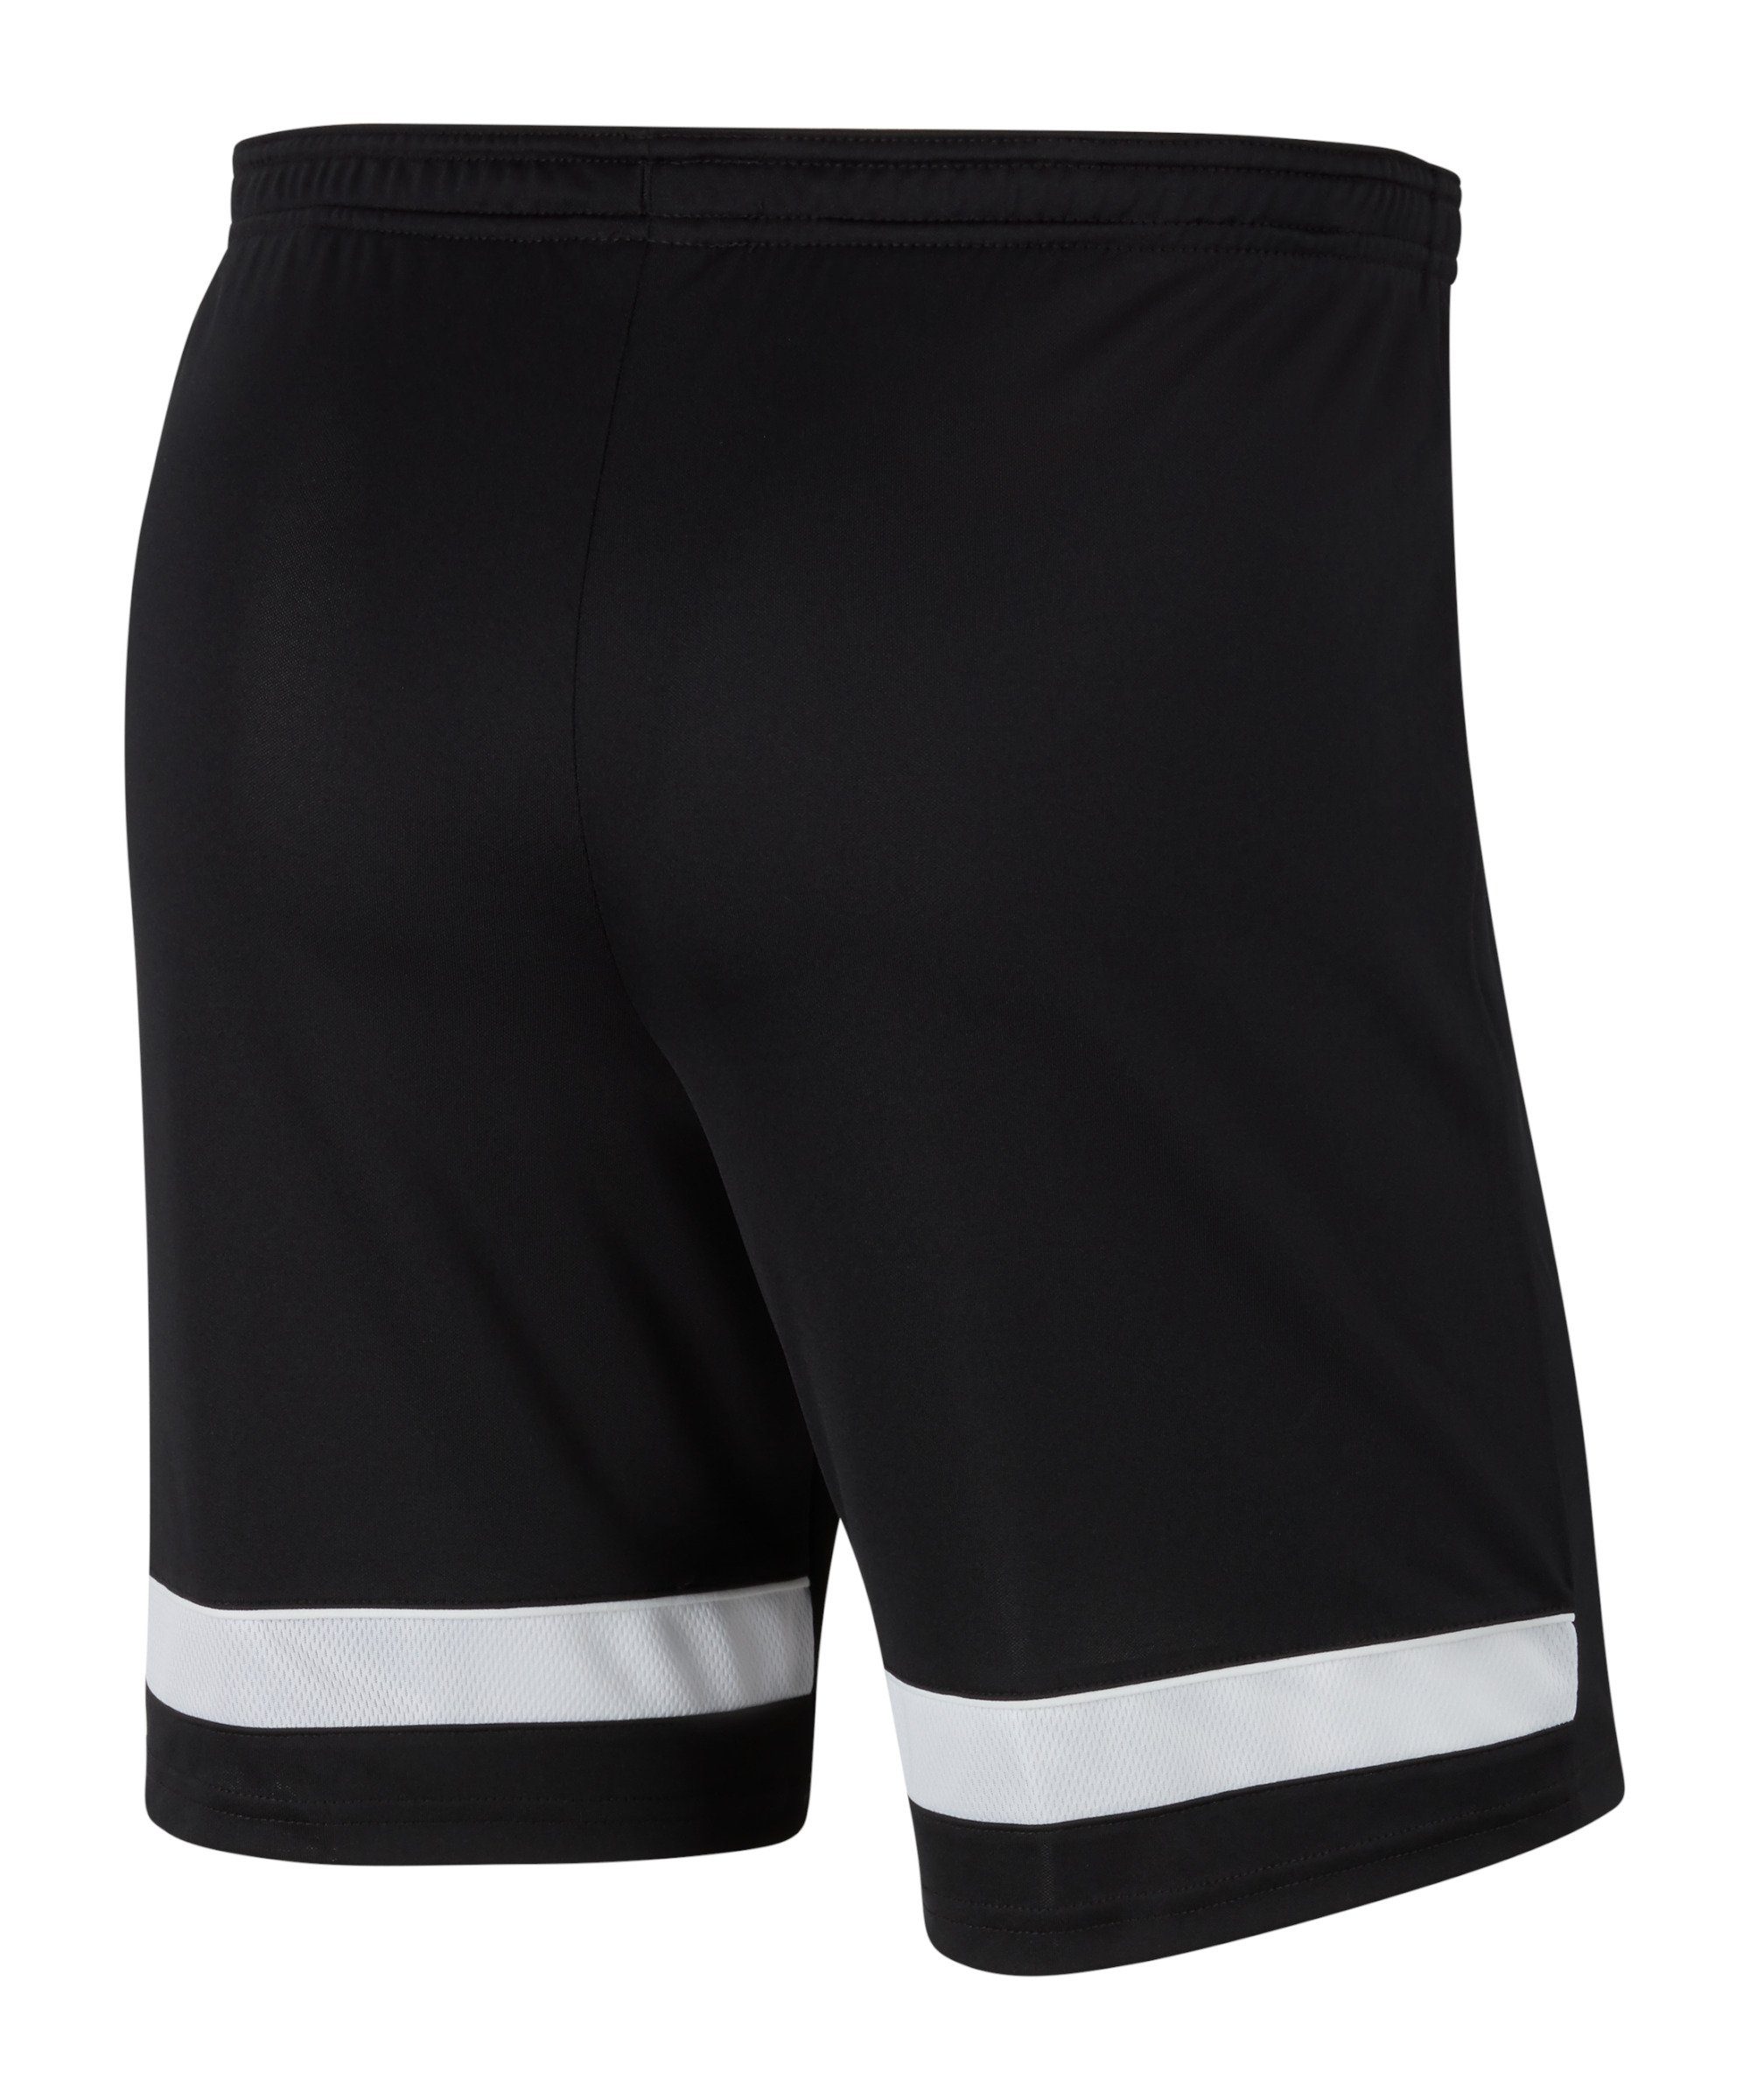 Academy Nike Short 21 schwarzweissweiss Sporthose